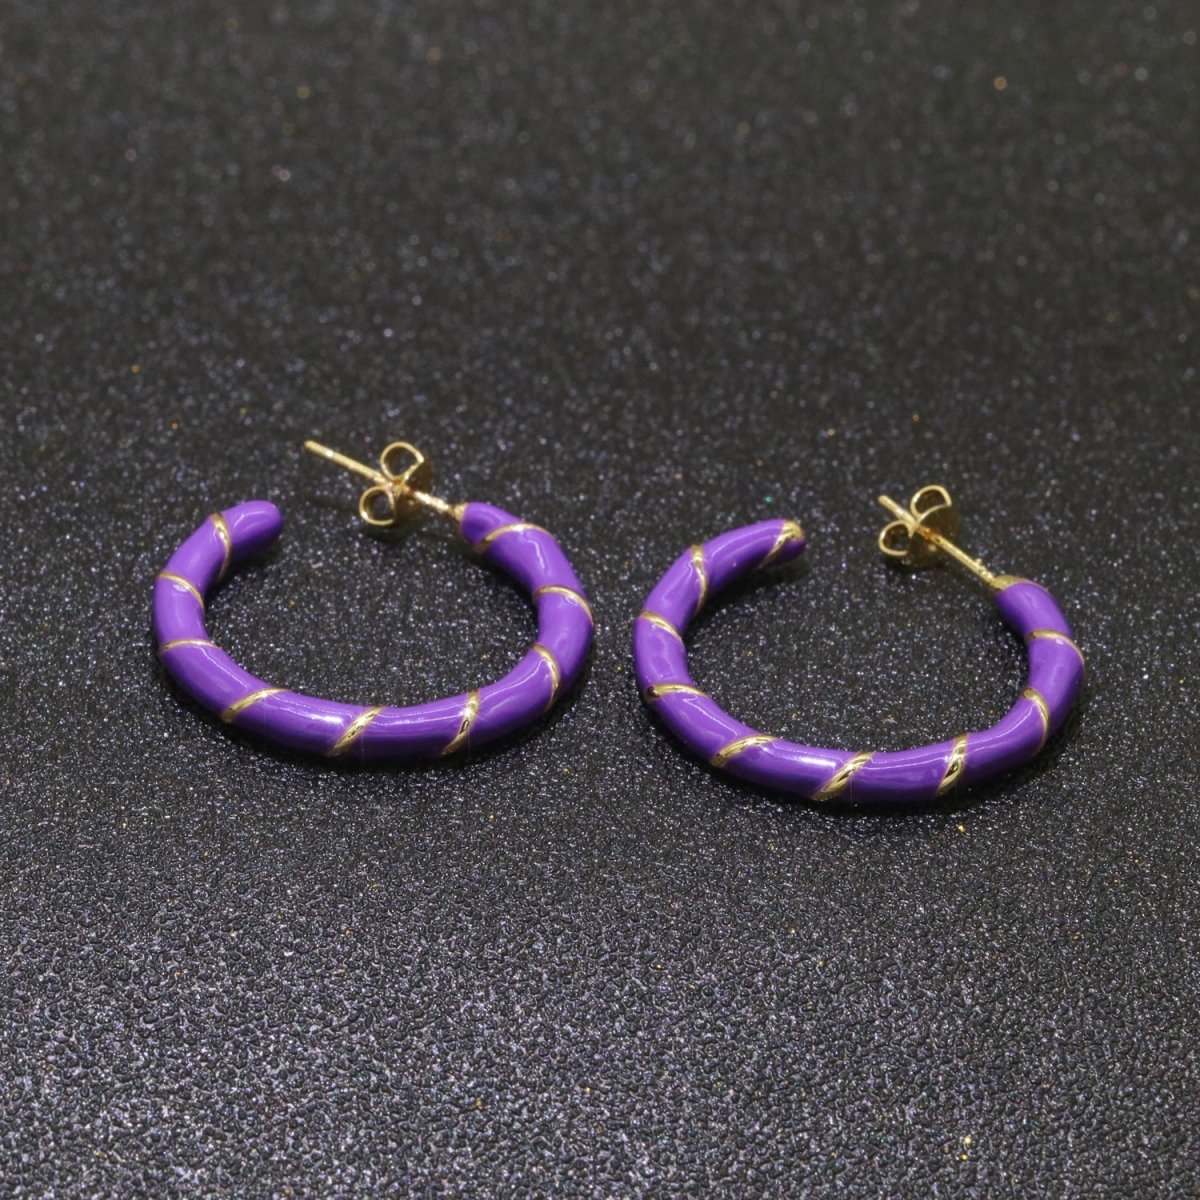 Purple Enamel Hoop Earring with Gold Swirl 26mm Hoop earring Jewelry Gift T-007 - DLUXCA